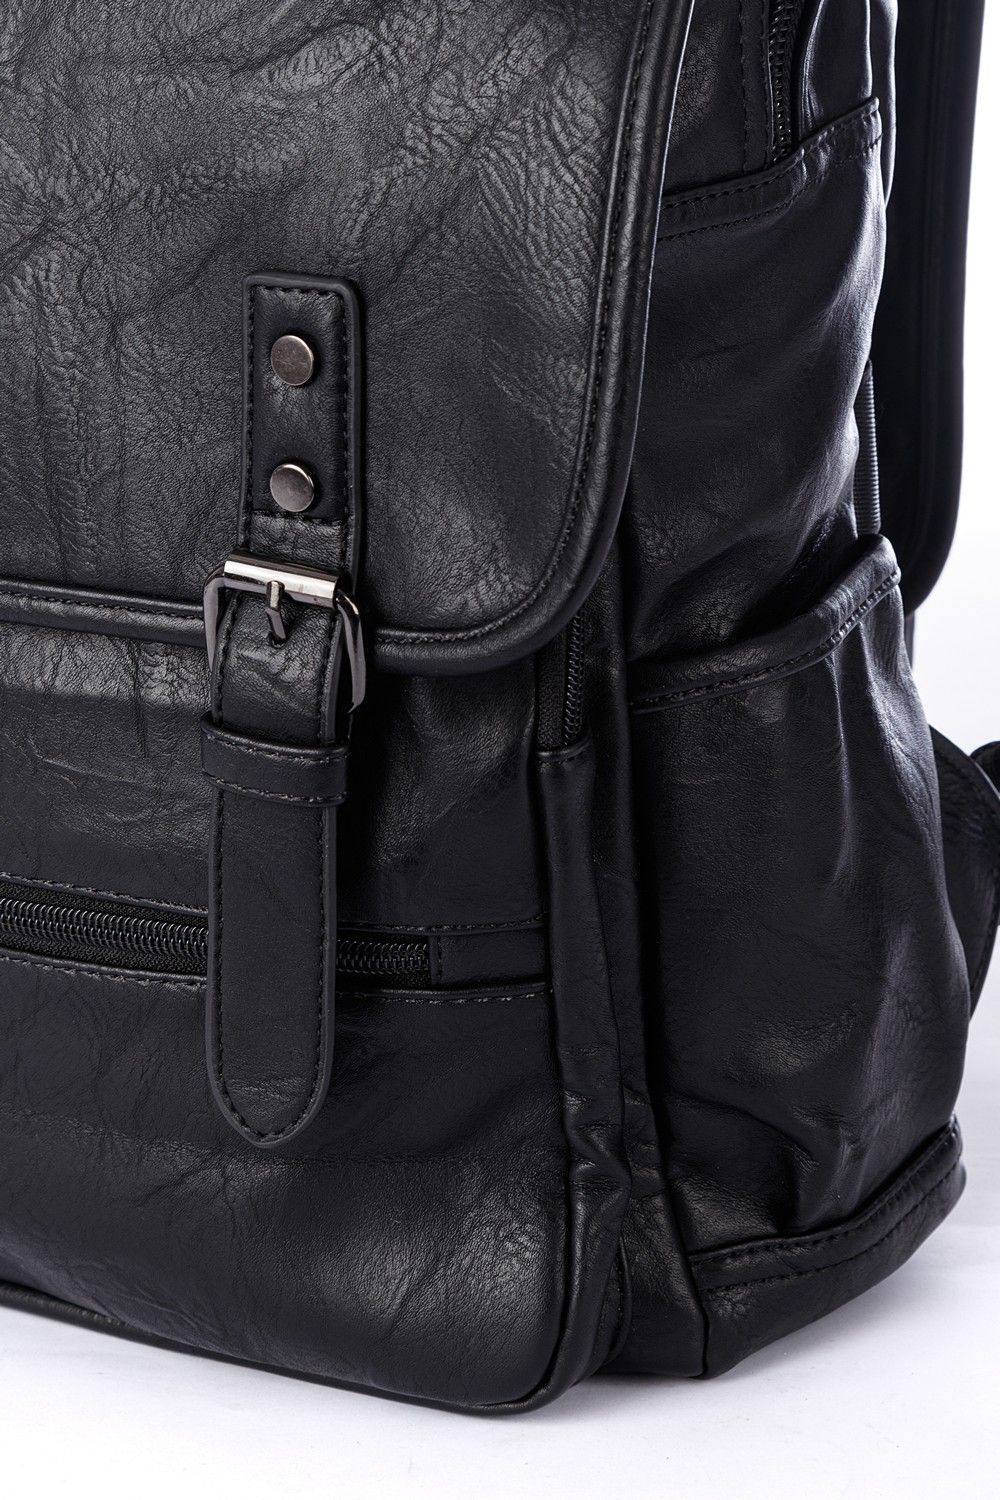 Рюкзак мужской / женский городской из искусственной кожи, черный, с широкими лямками, объем 14л